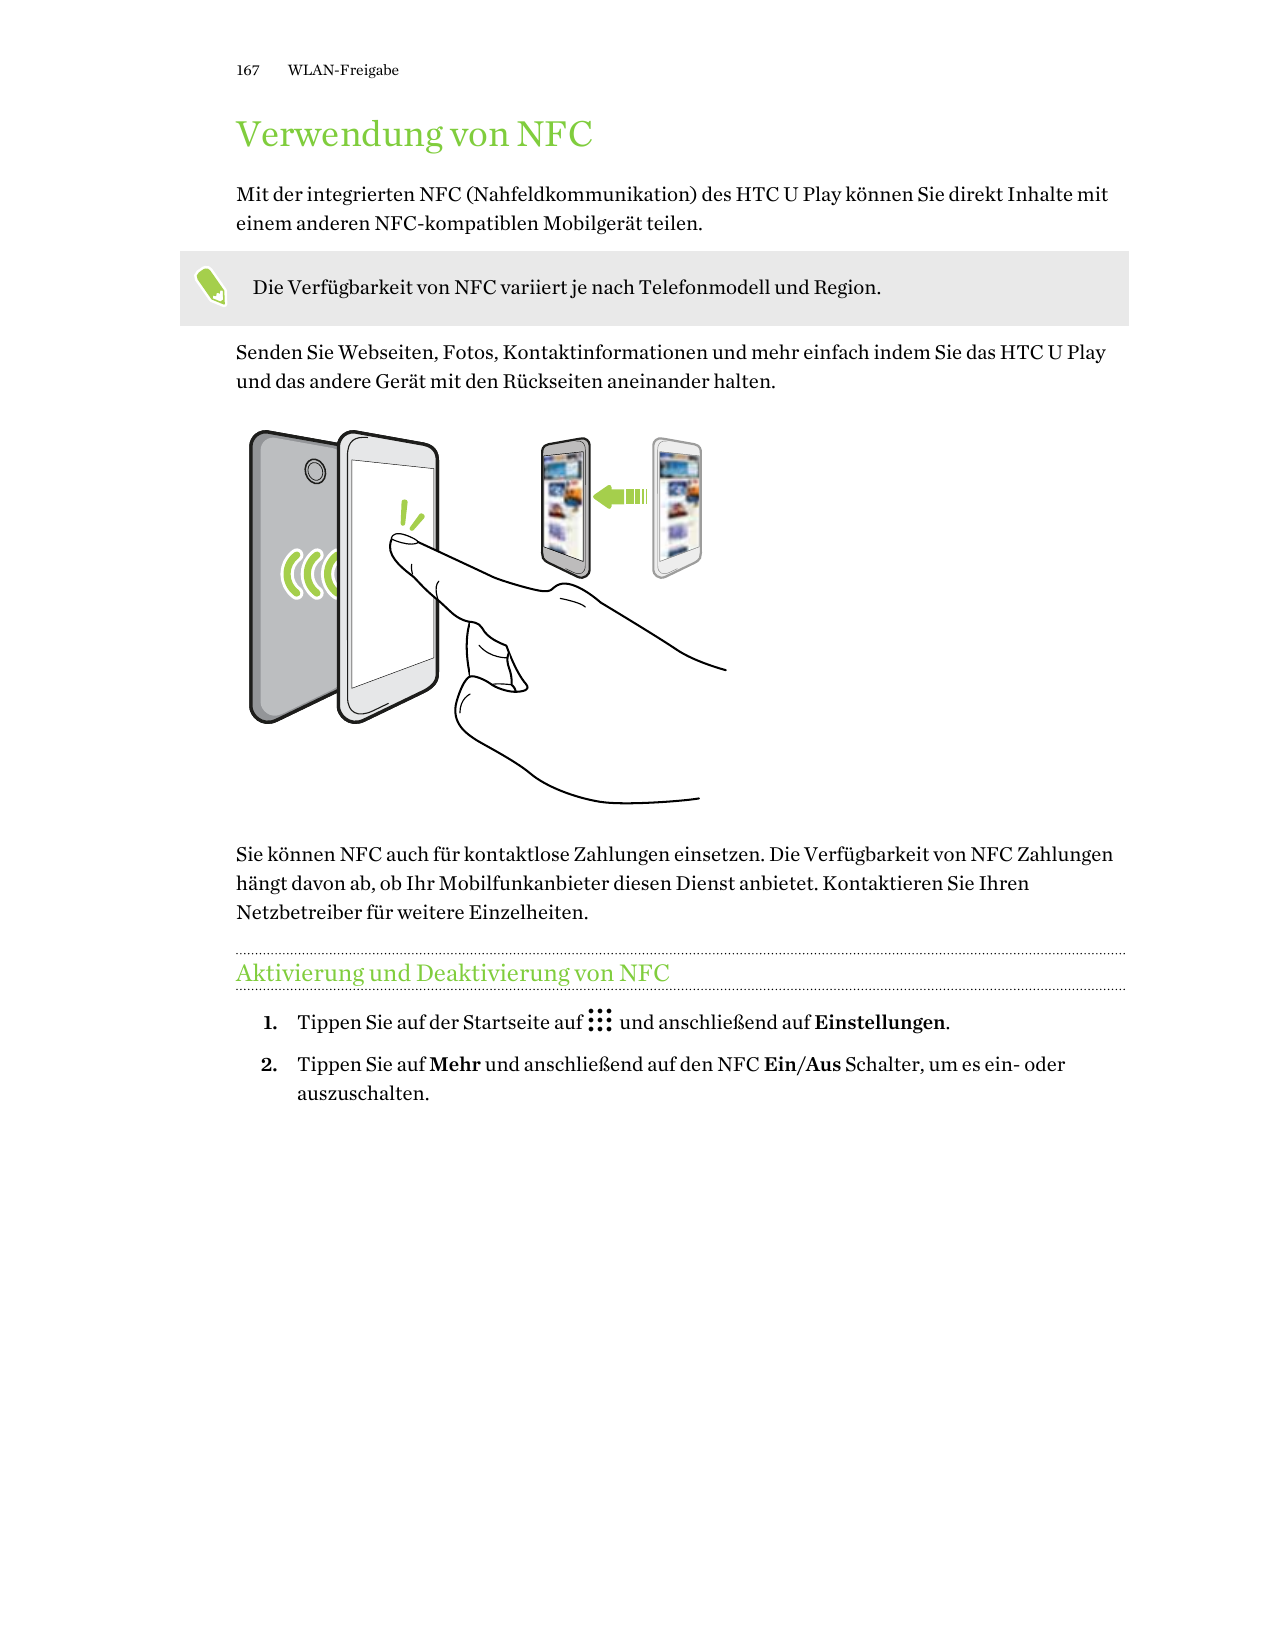 167WLAN-FreigabeVerwendung von NFCMit der integrierten NFC (Nahfeldkommunikation) des HTC U Play können Sie direkt Inhalte mitei